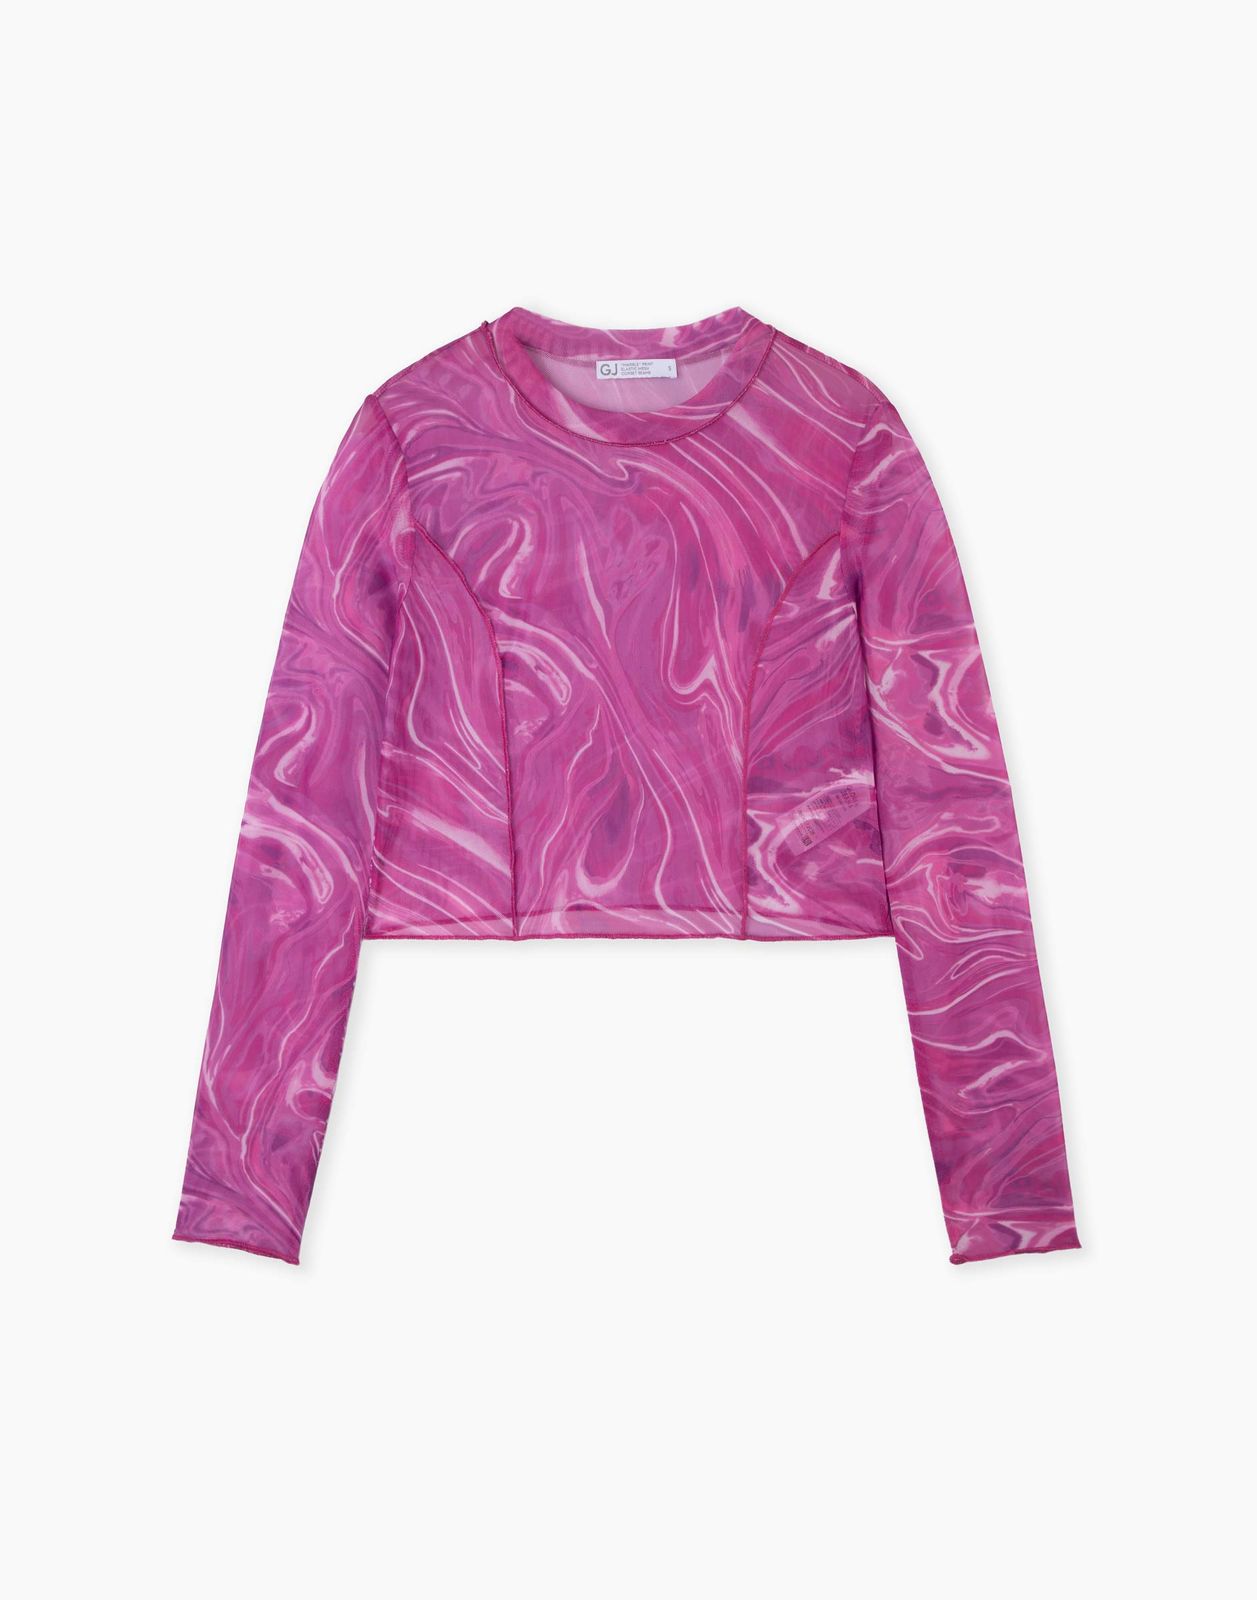 Лонгслив Gloria Jeans GKT023143 розовый/разноцветный S/170 женский